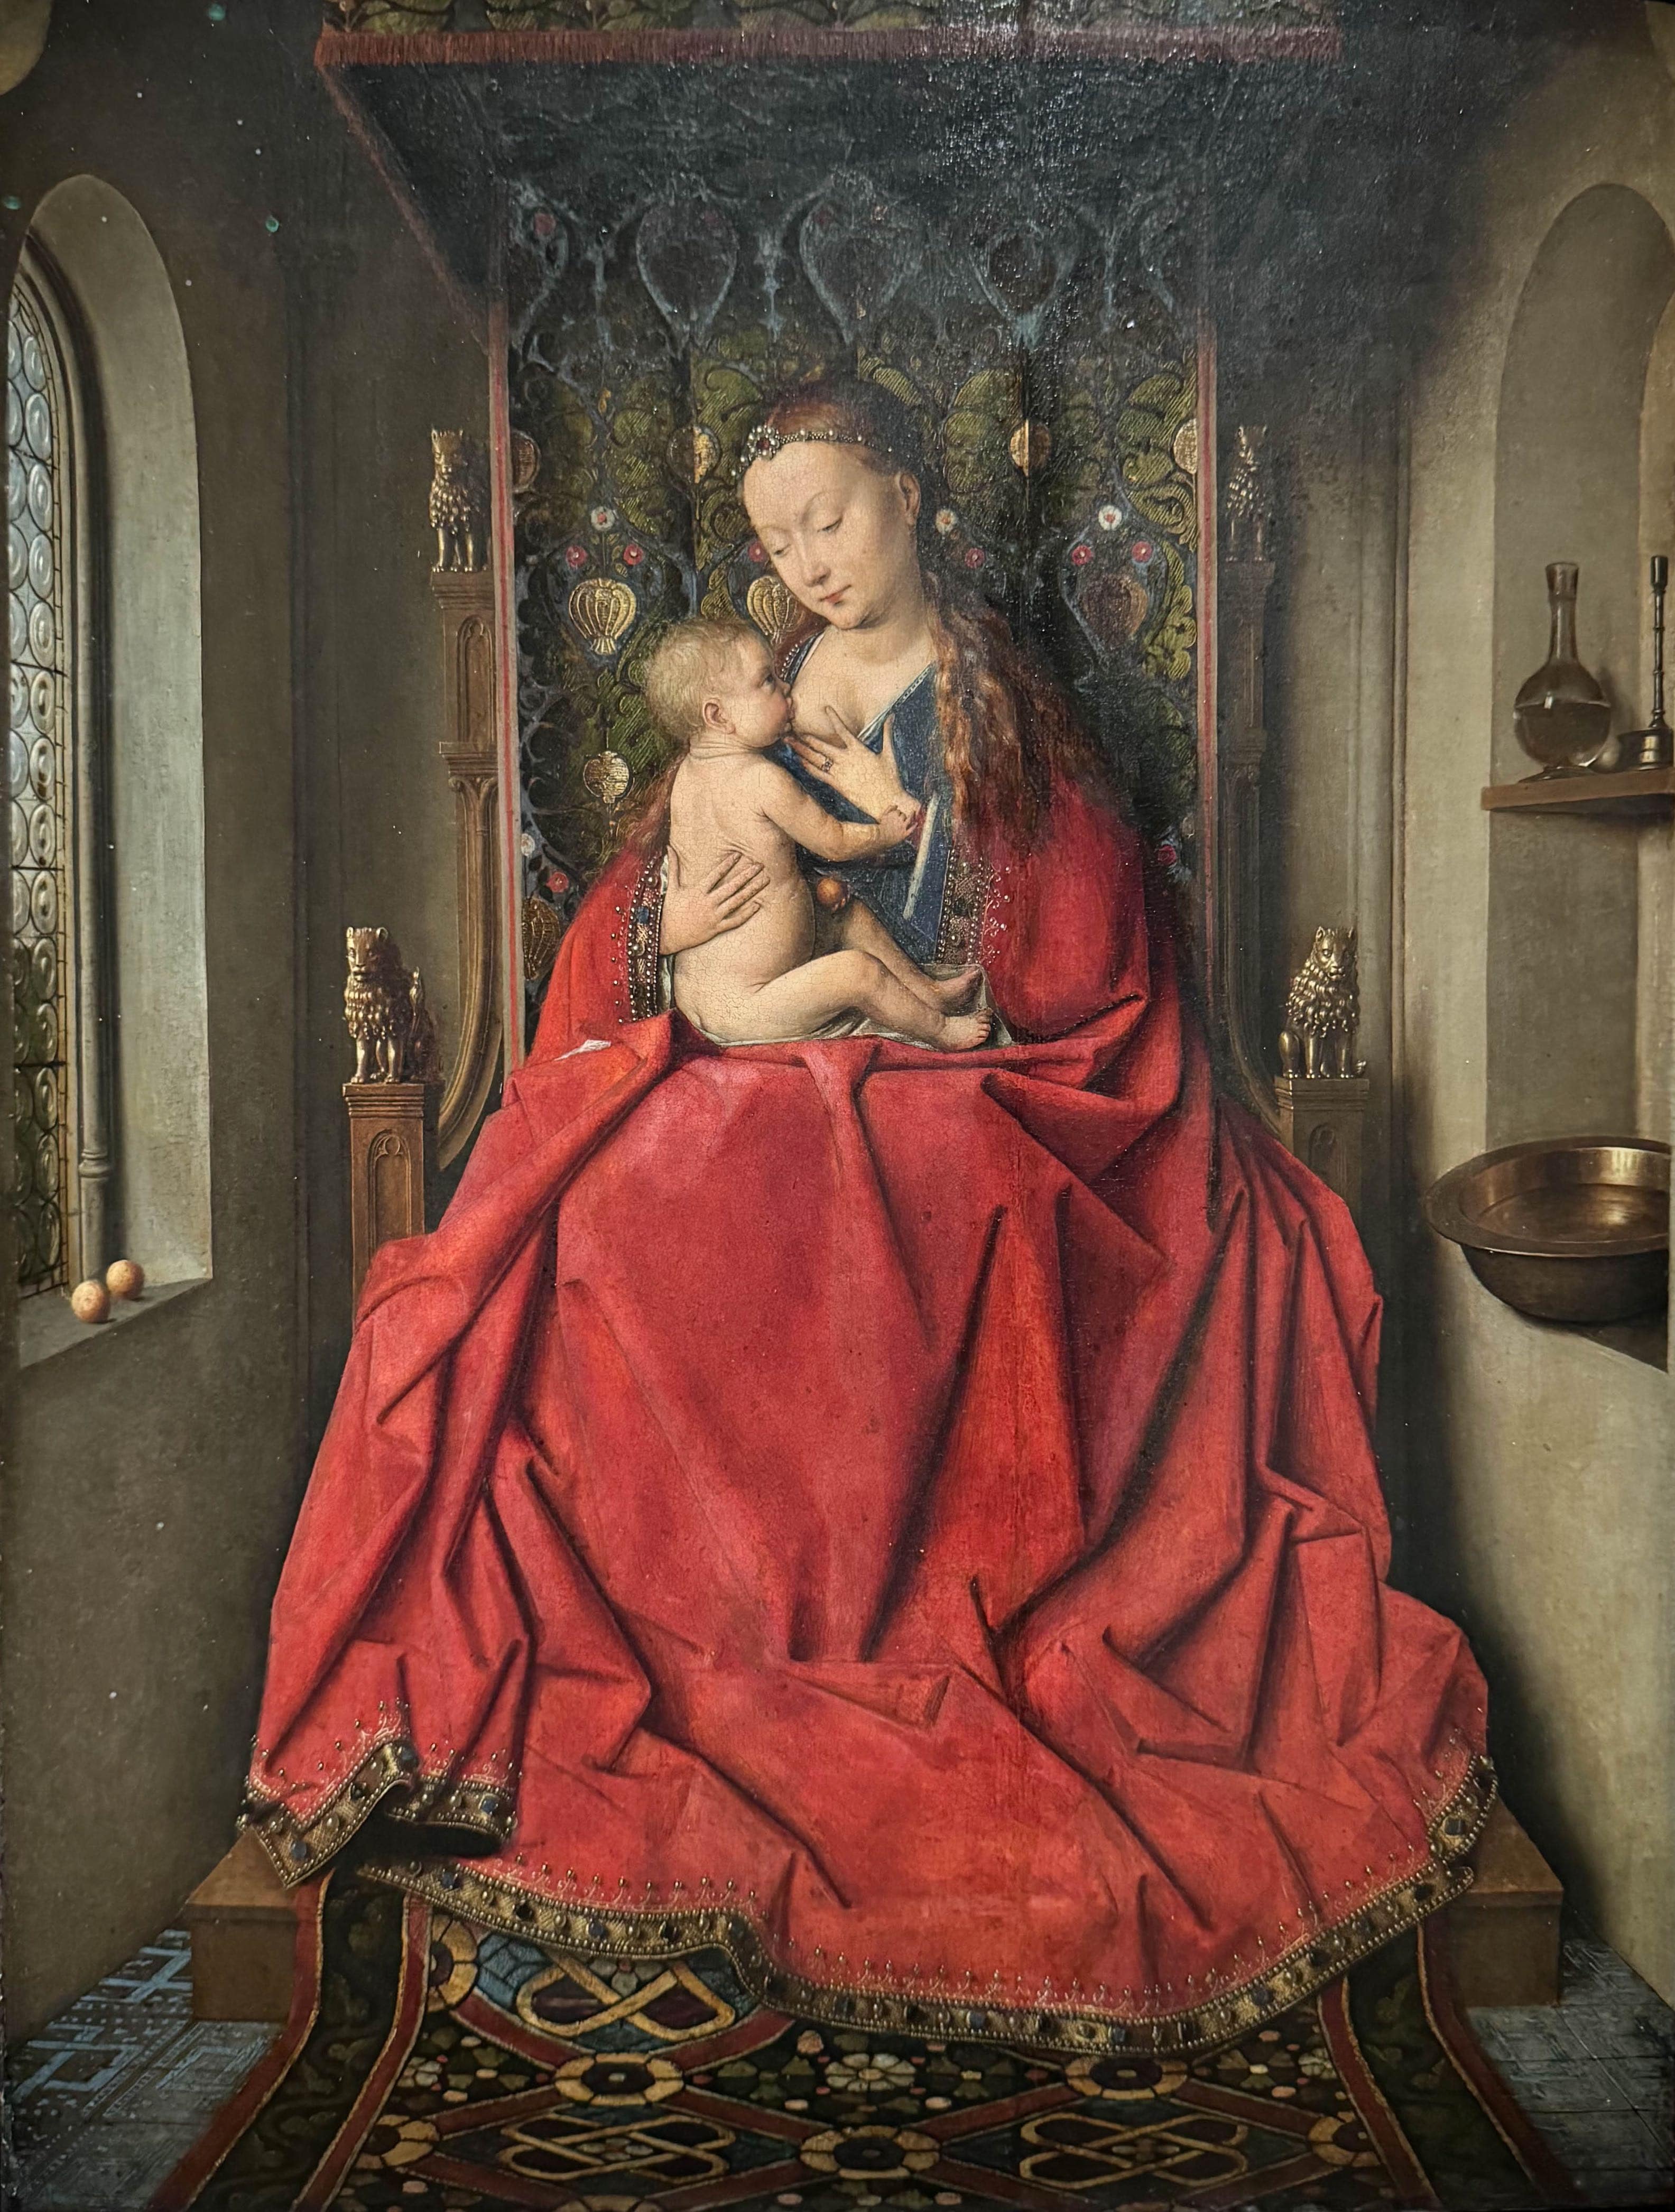 La Vierge et l’Enfant dite Vierge de Lucques (vers 1437), Jan van Eyck, Musée du Louvre